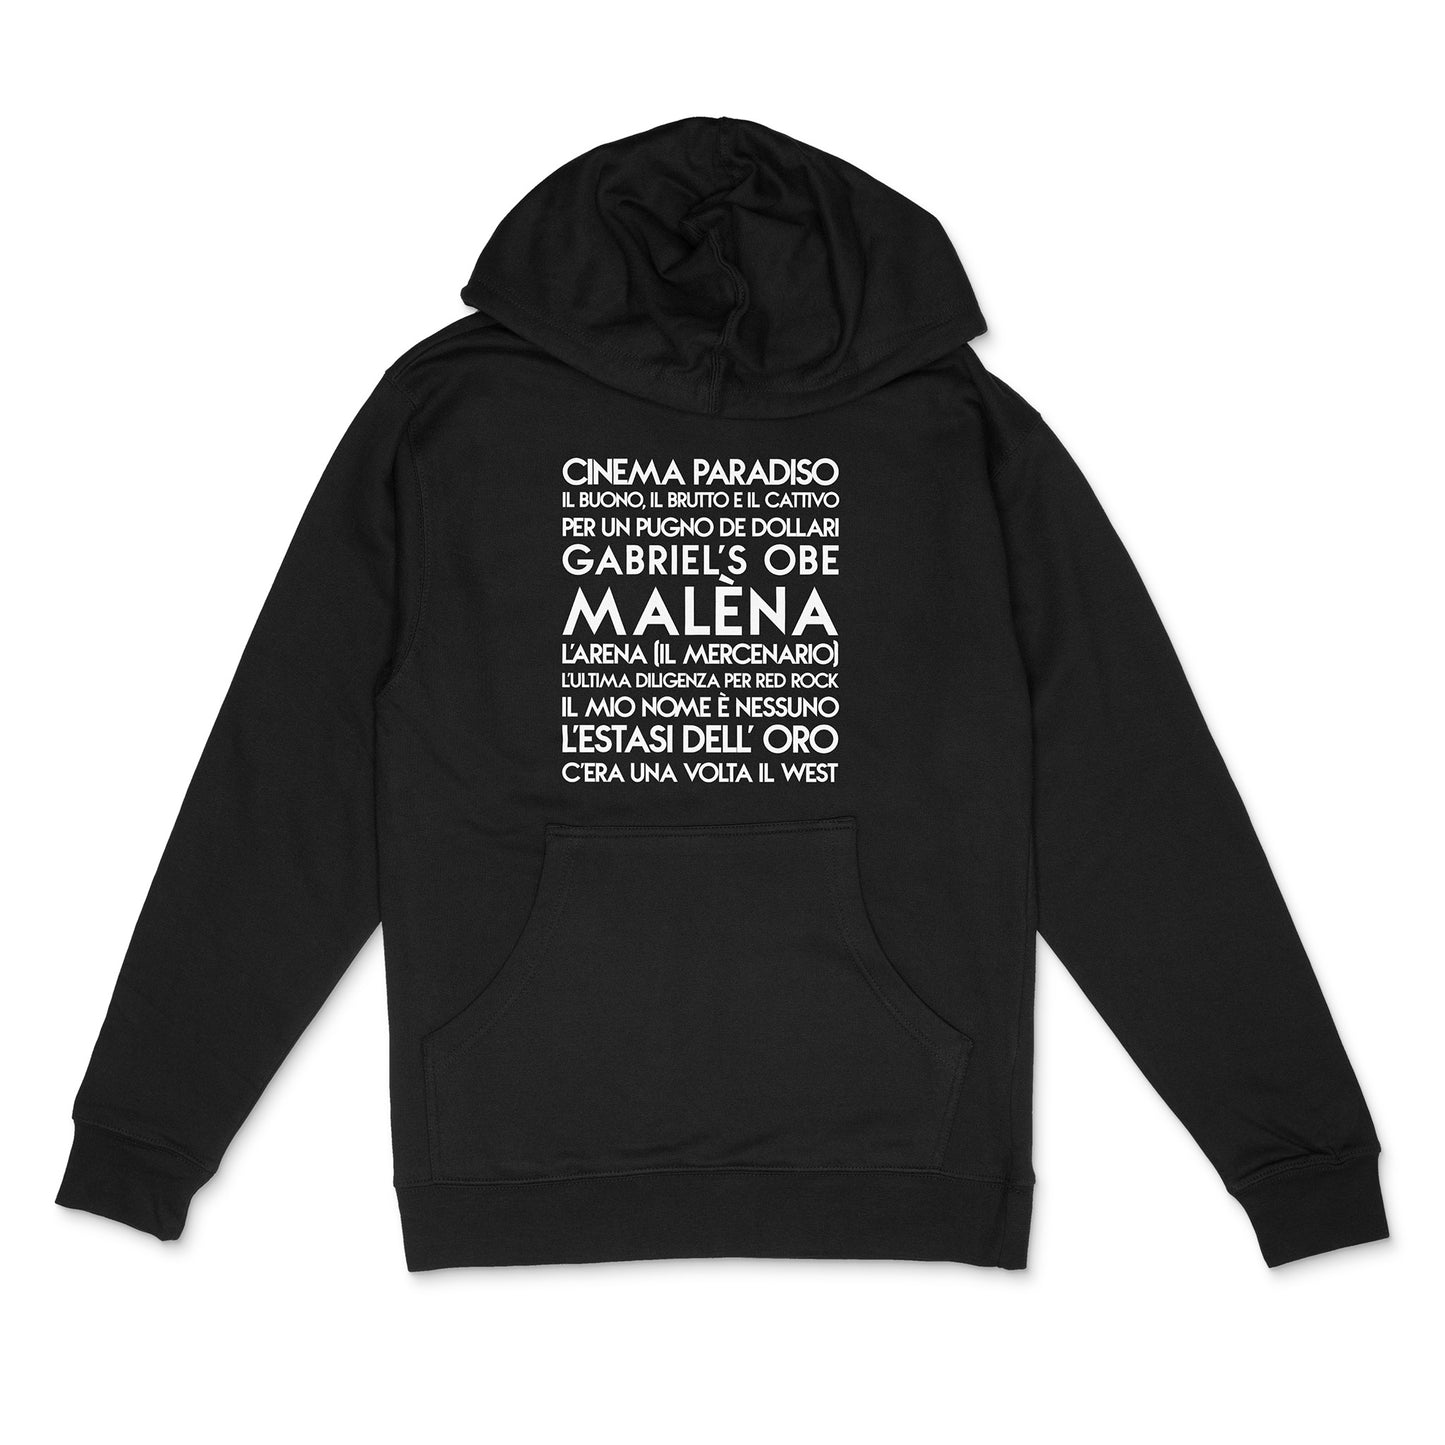 custom sample - composer -  custom white matte text on black unisex pullover hoodie - Custom YourTen sweatshirt by BBJ / Glitter Garage